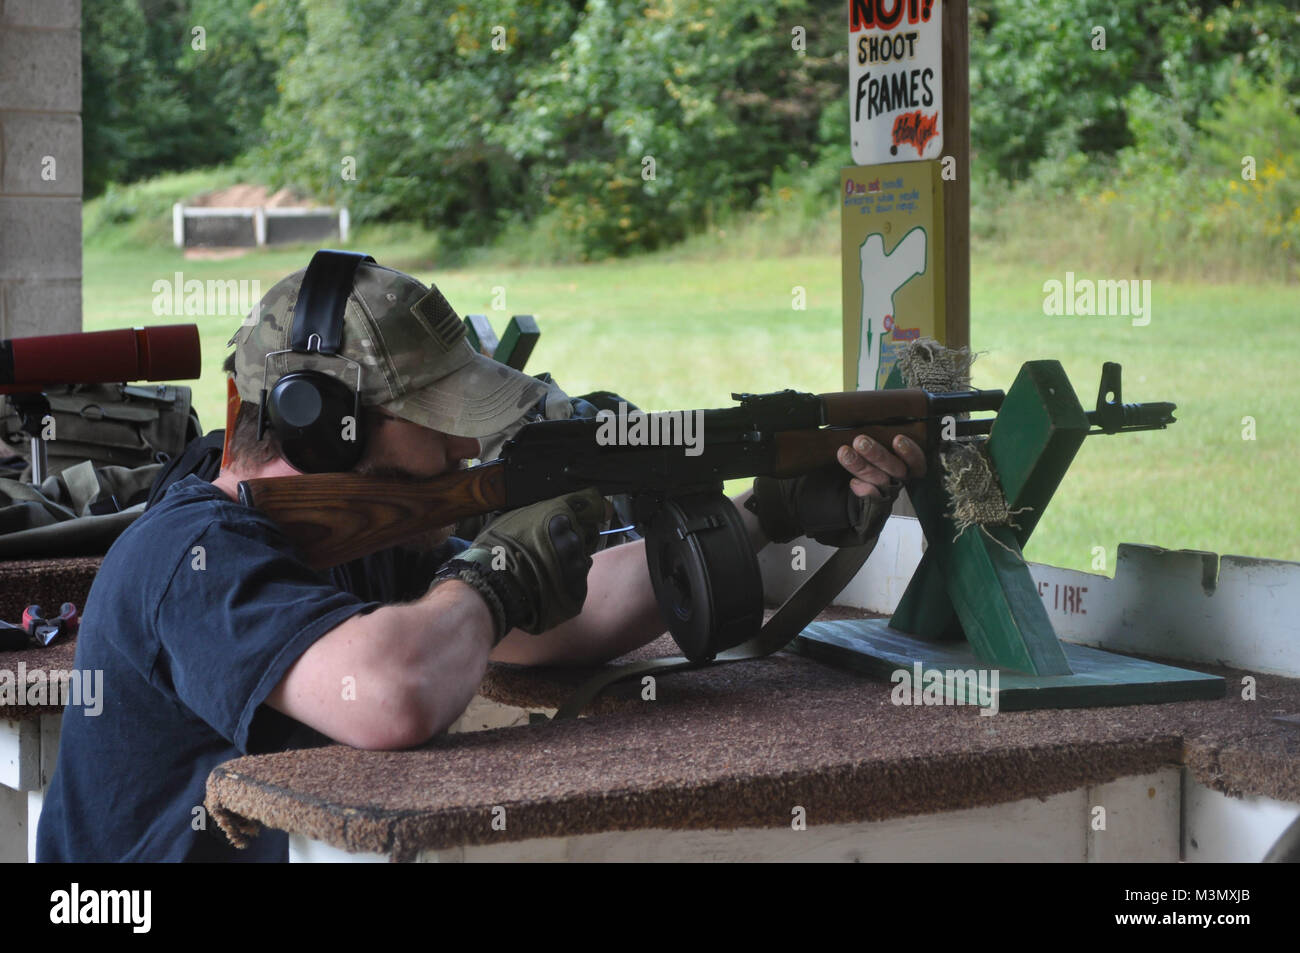 Mann eine AK47 Assault Rifle Gewehr schießen auf einen Schießstand Stockfoto